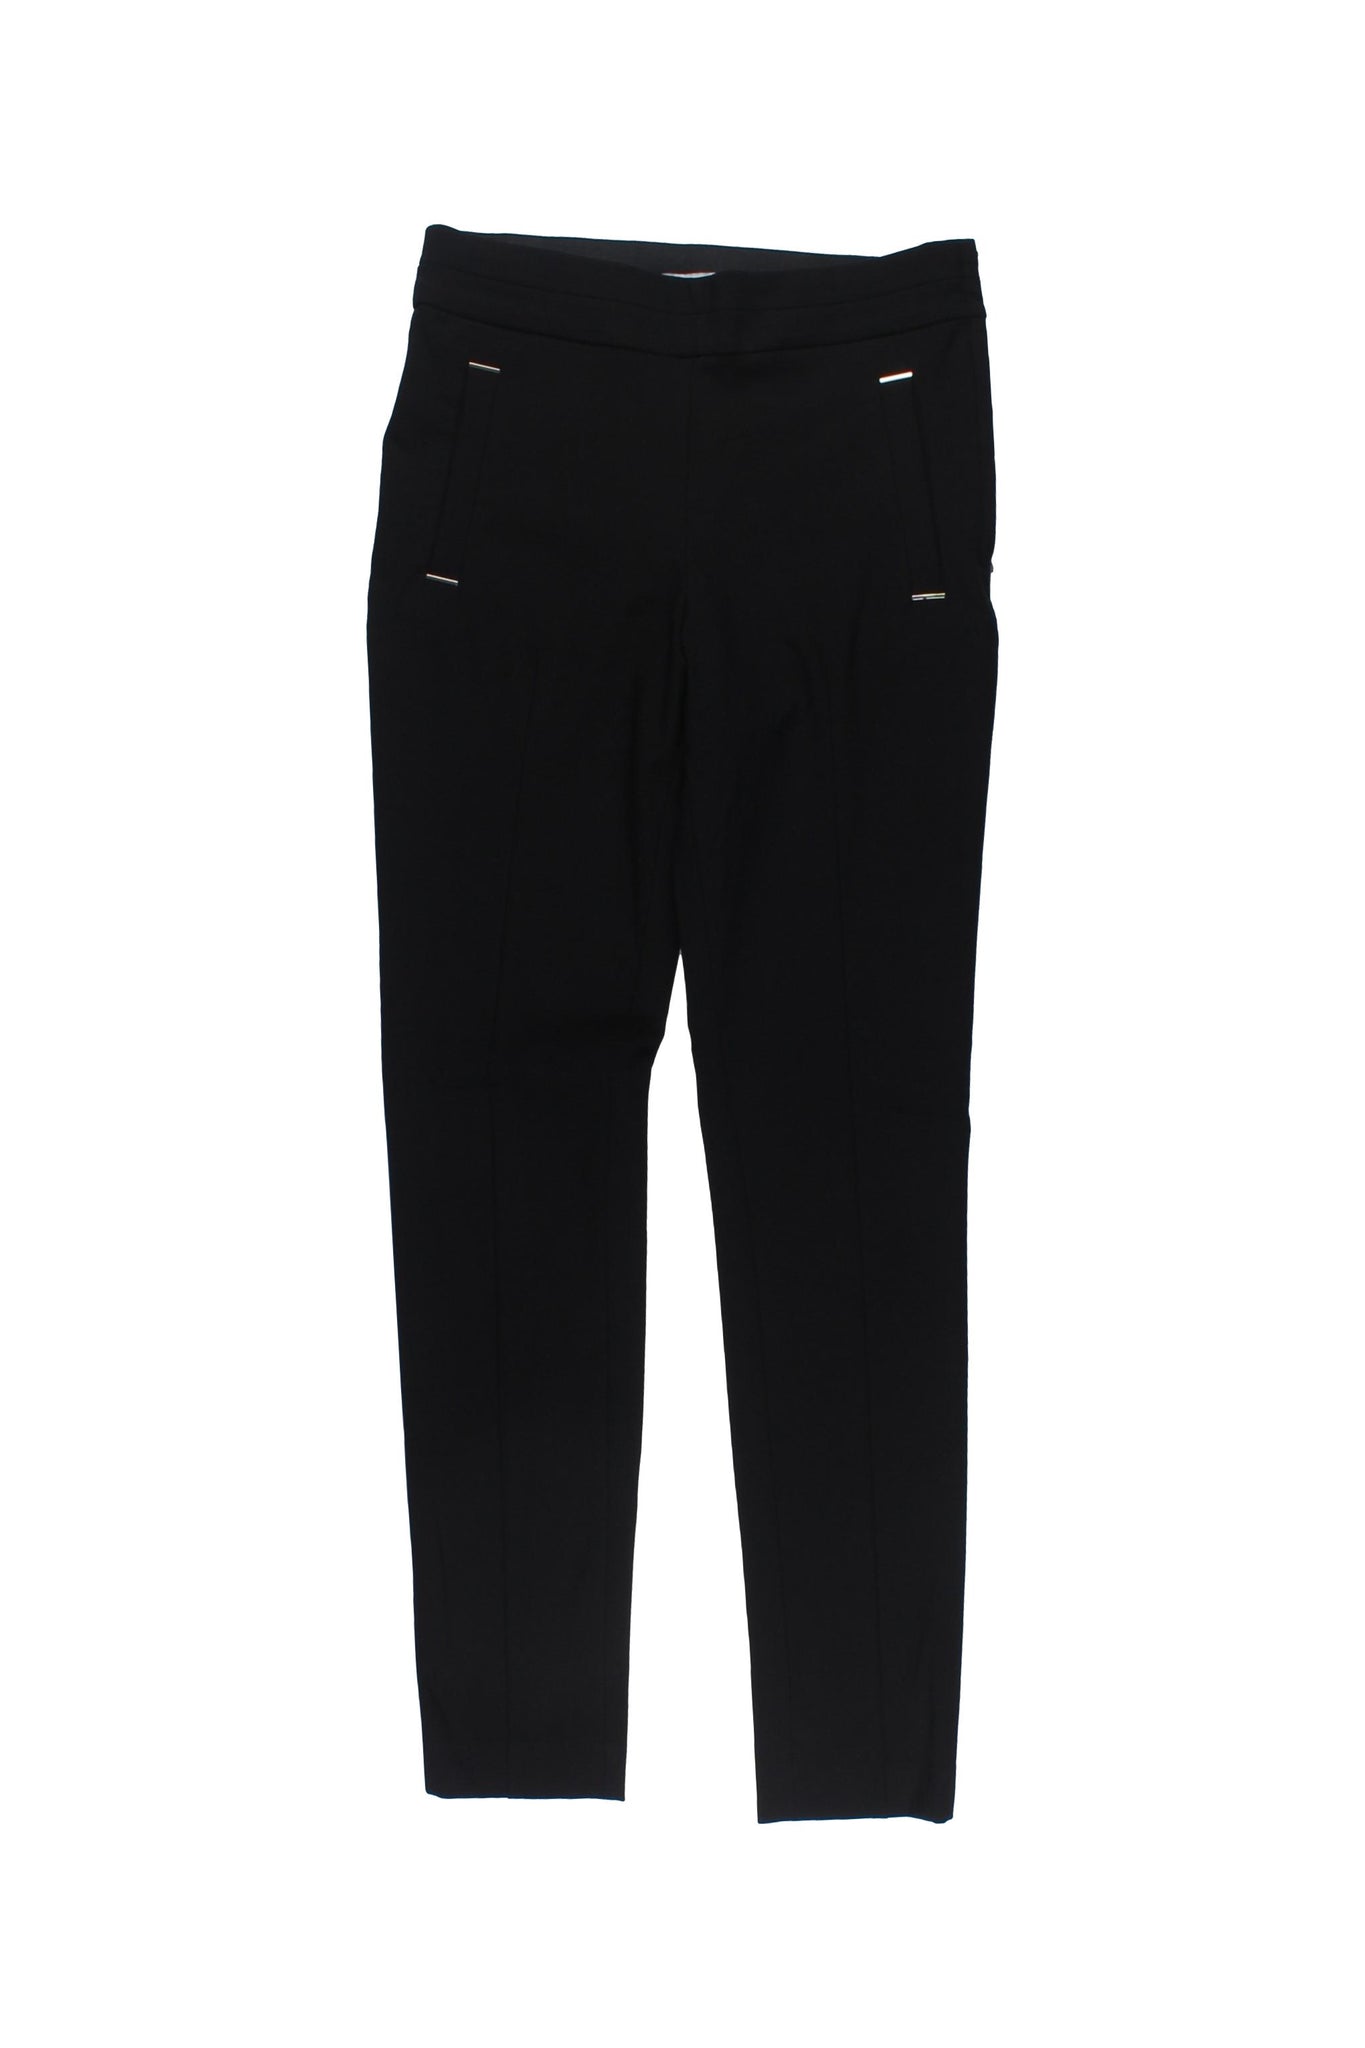 H&M - Pantalones Color Negro Con Detalle De Bolsillos Frontales